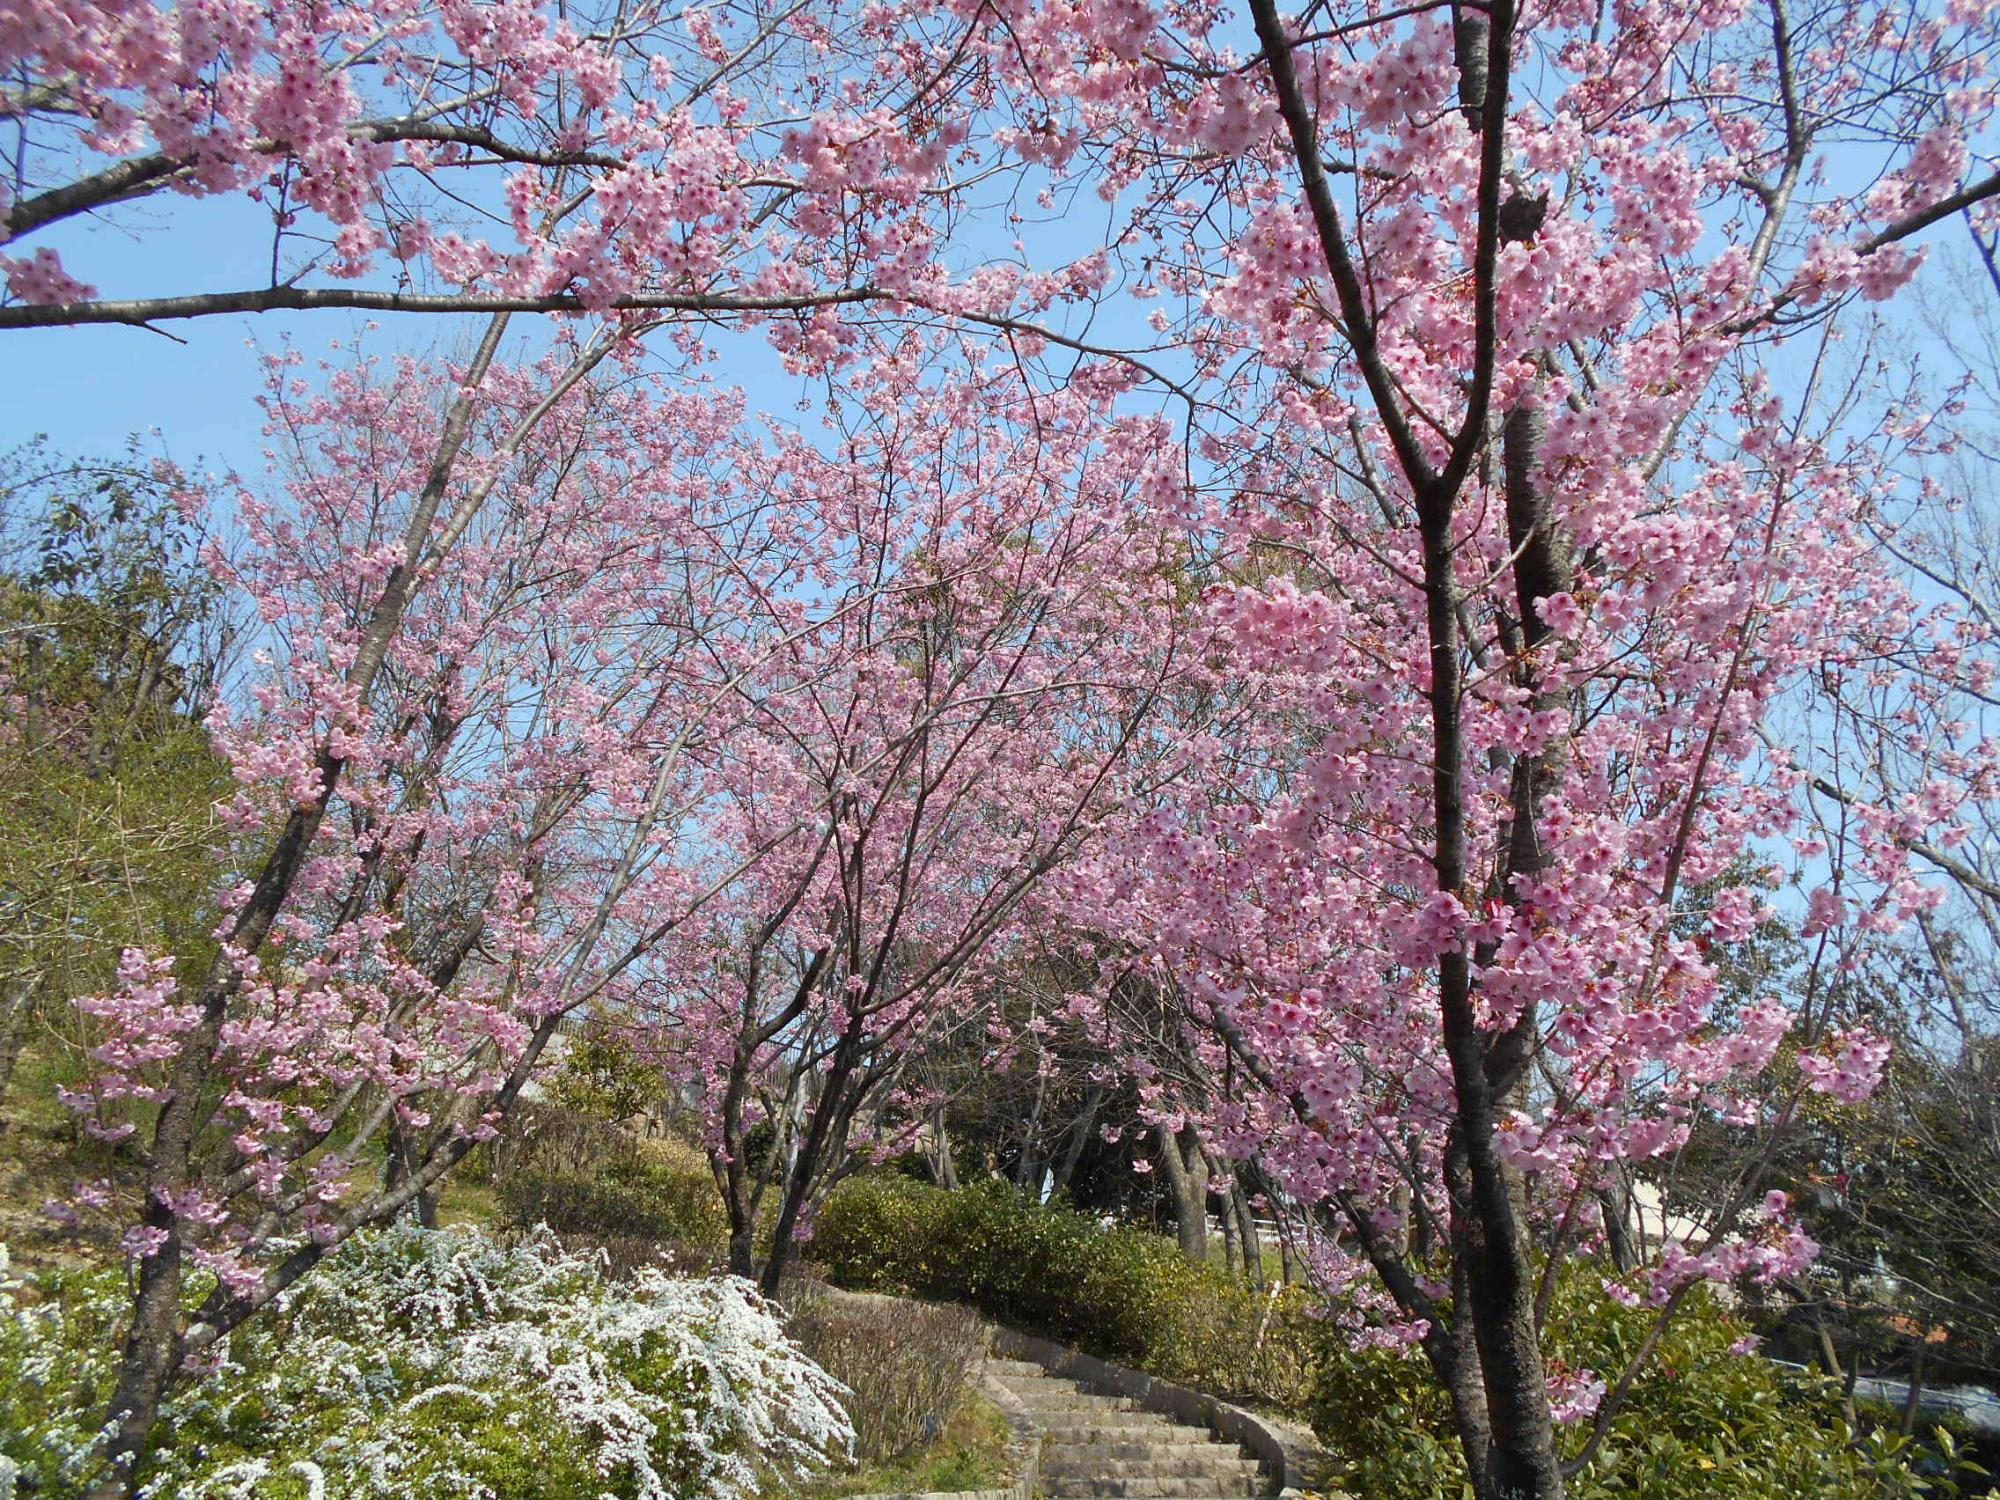 展望台から公園に降りてくる階段沿いの大山桜が満開です。淡紅色の花がきれいです。